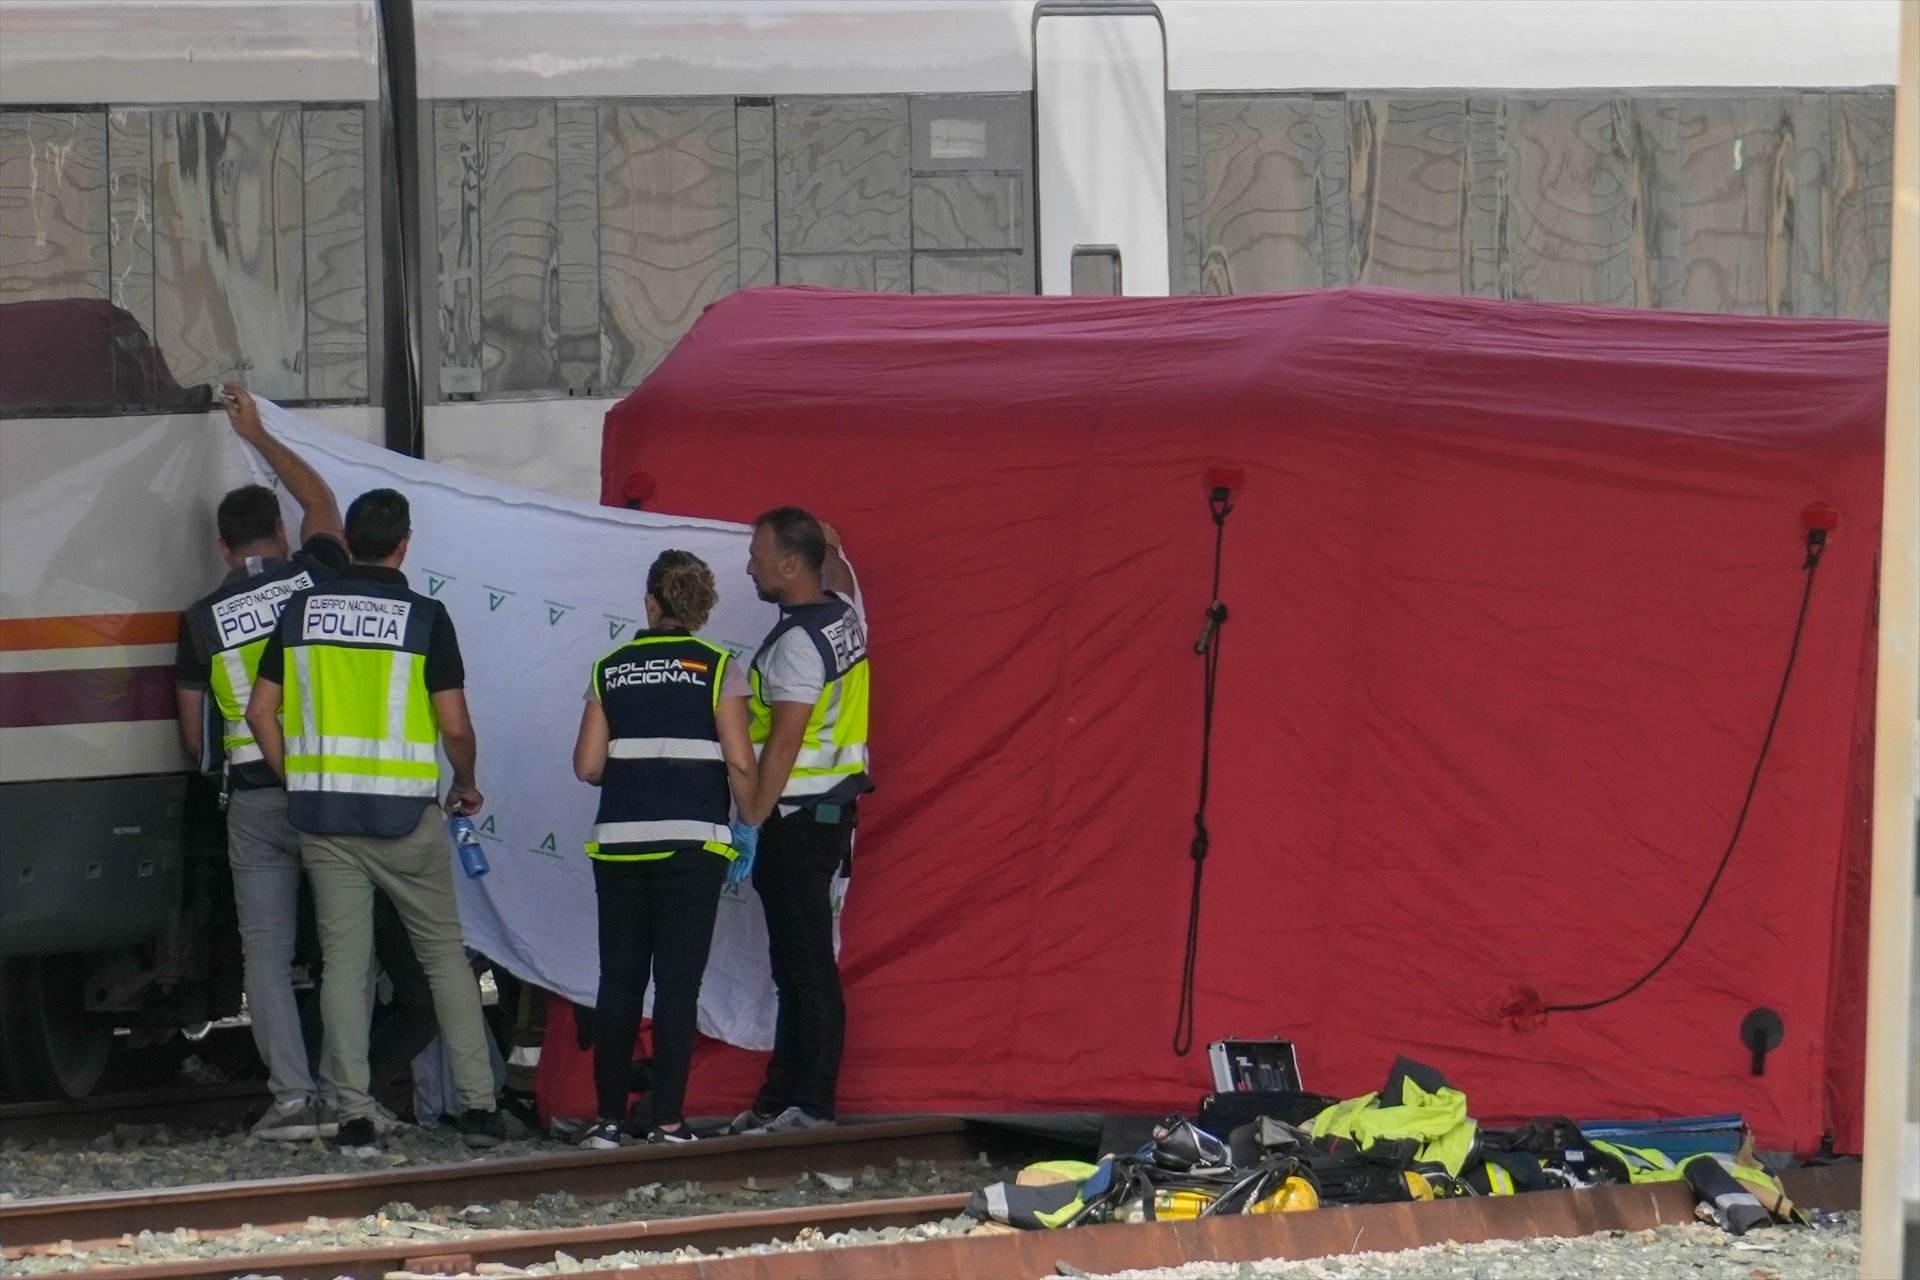 La policia, bombers i l'UME, despleguen el dispositius per treure el cadàver d'Alvaro Prieto entre dos trens a prop de l'estació de Santa Justa / EDUARDO BRIONES - EUROPA PRESS